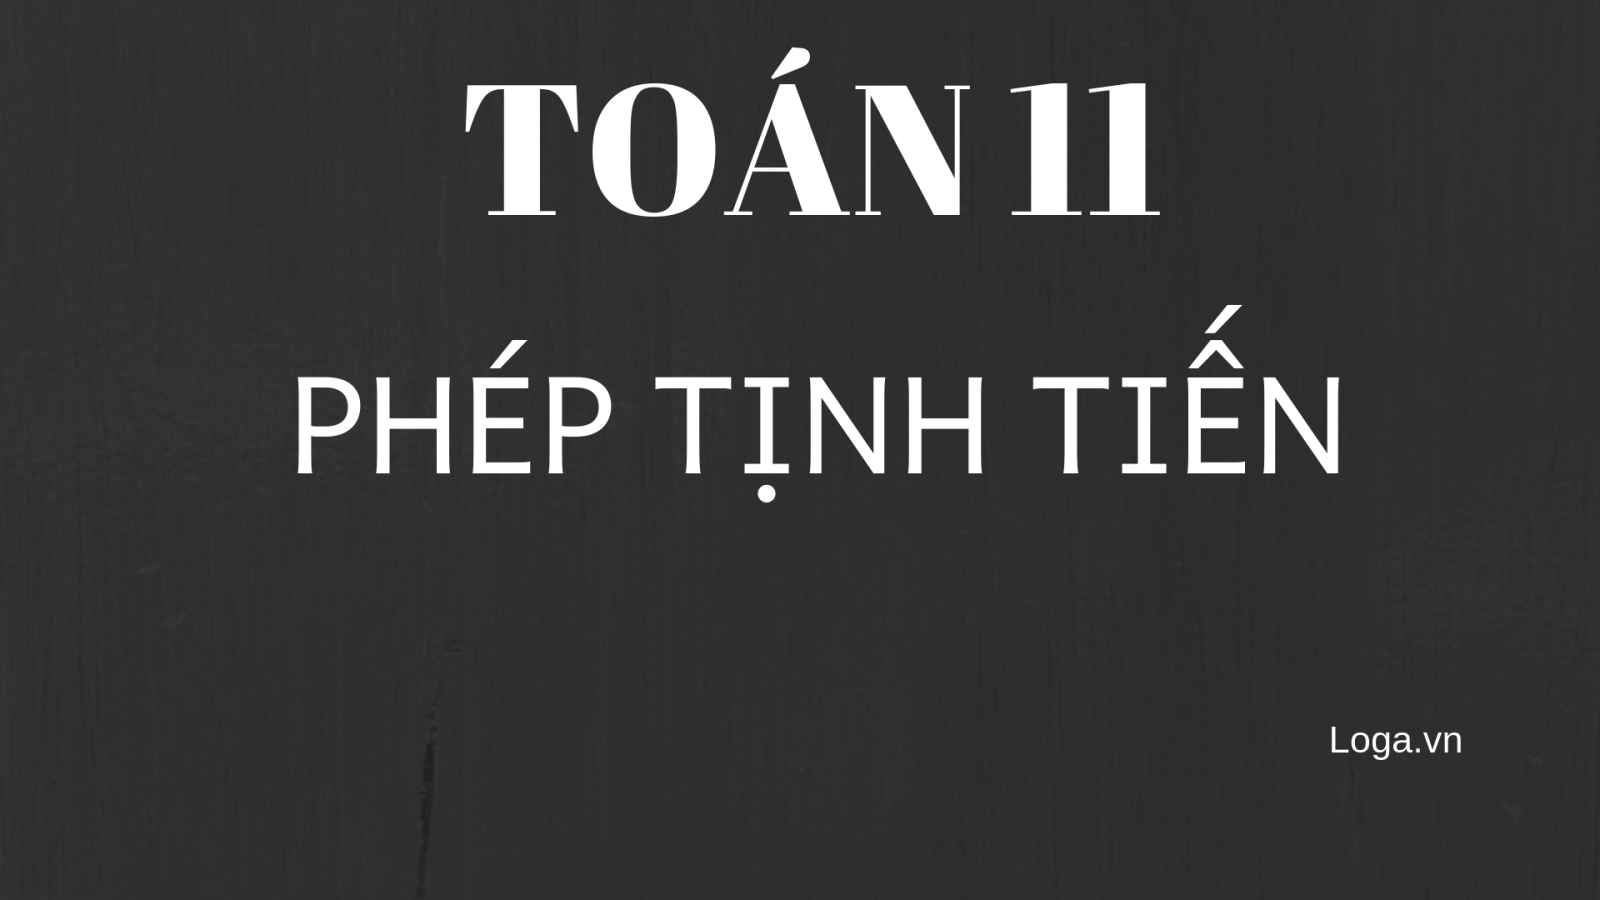 toan-11-phep-tinh-tien